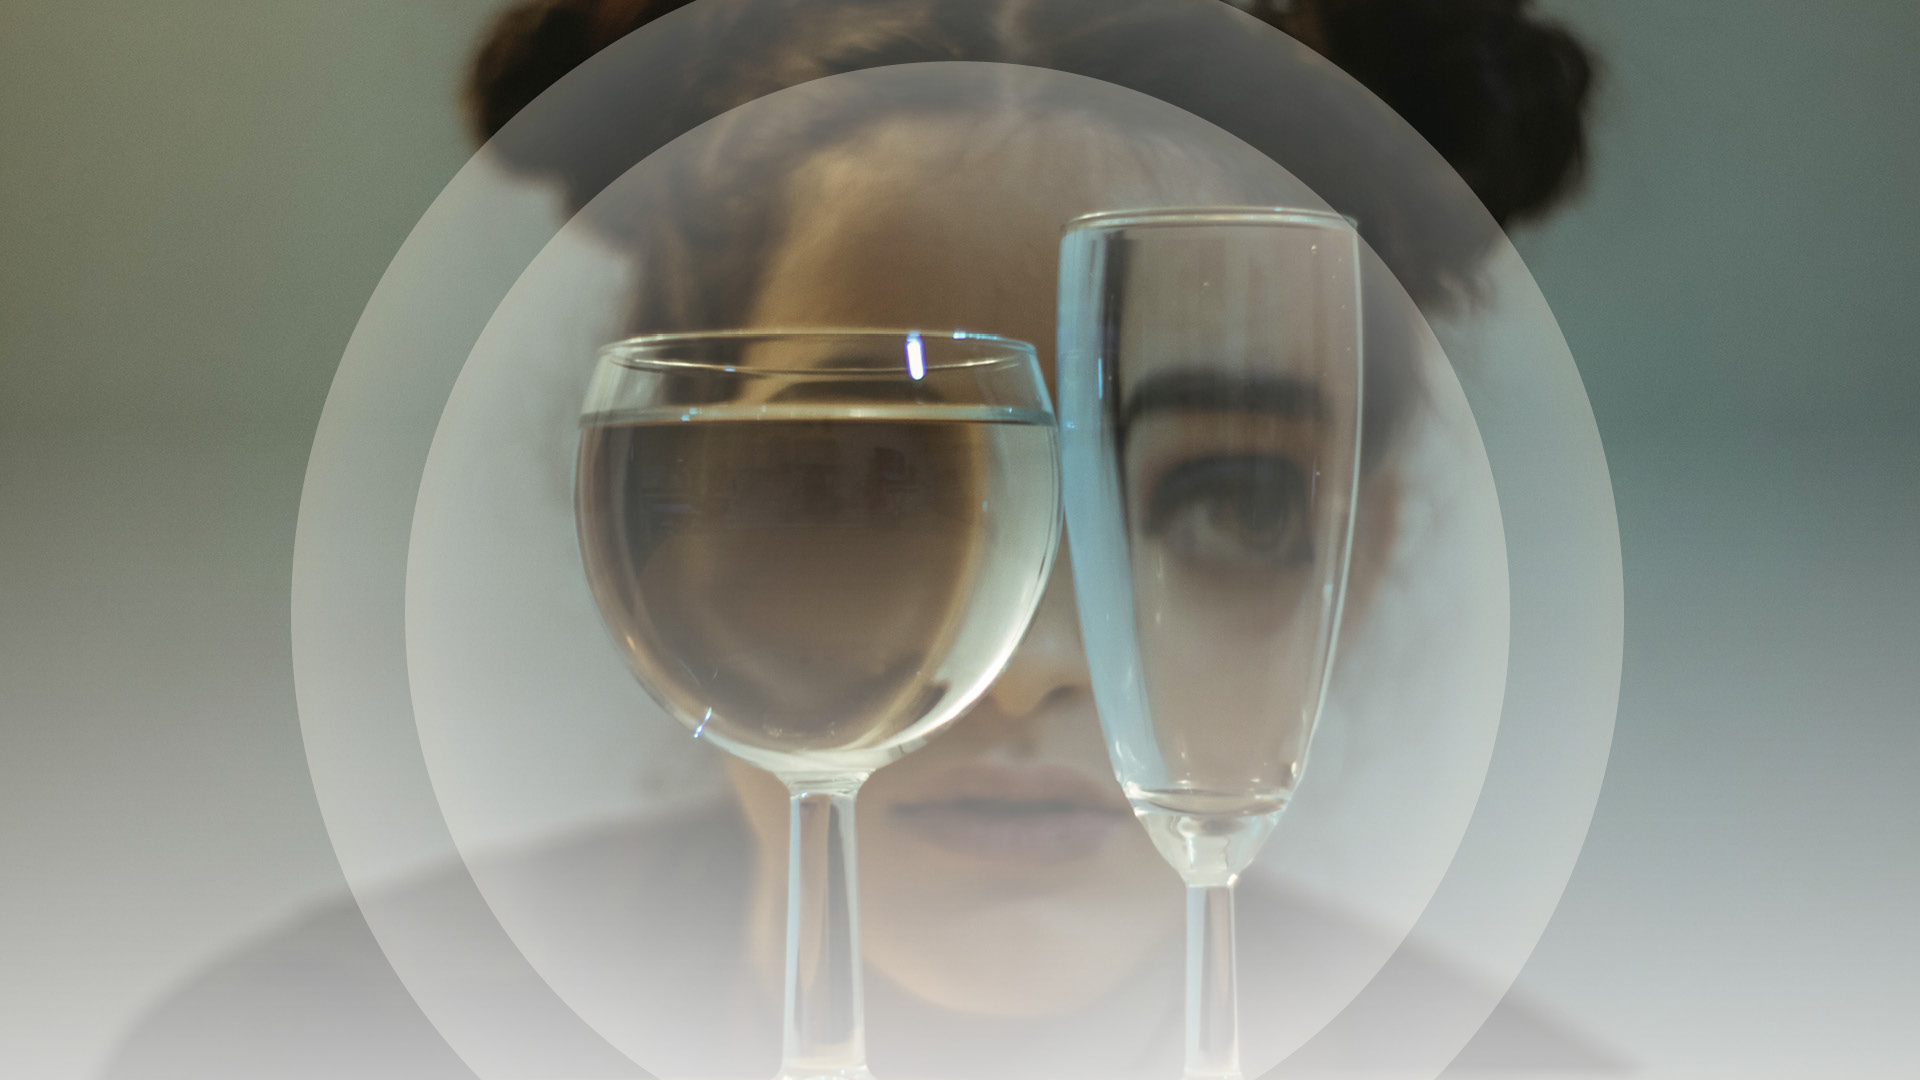 Ett vinglas med vatten och ett tomt champagneglas